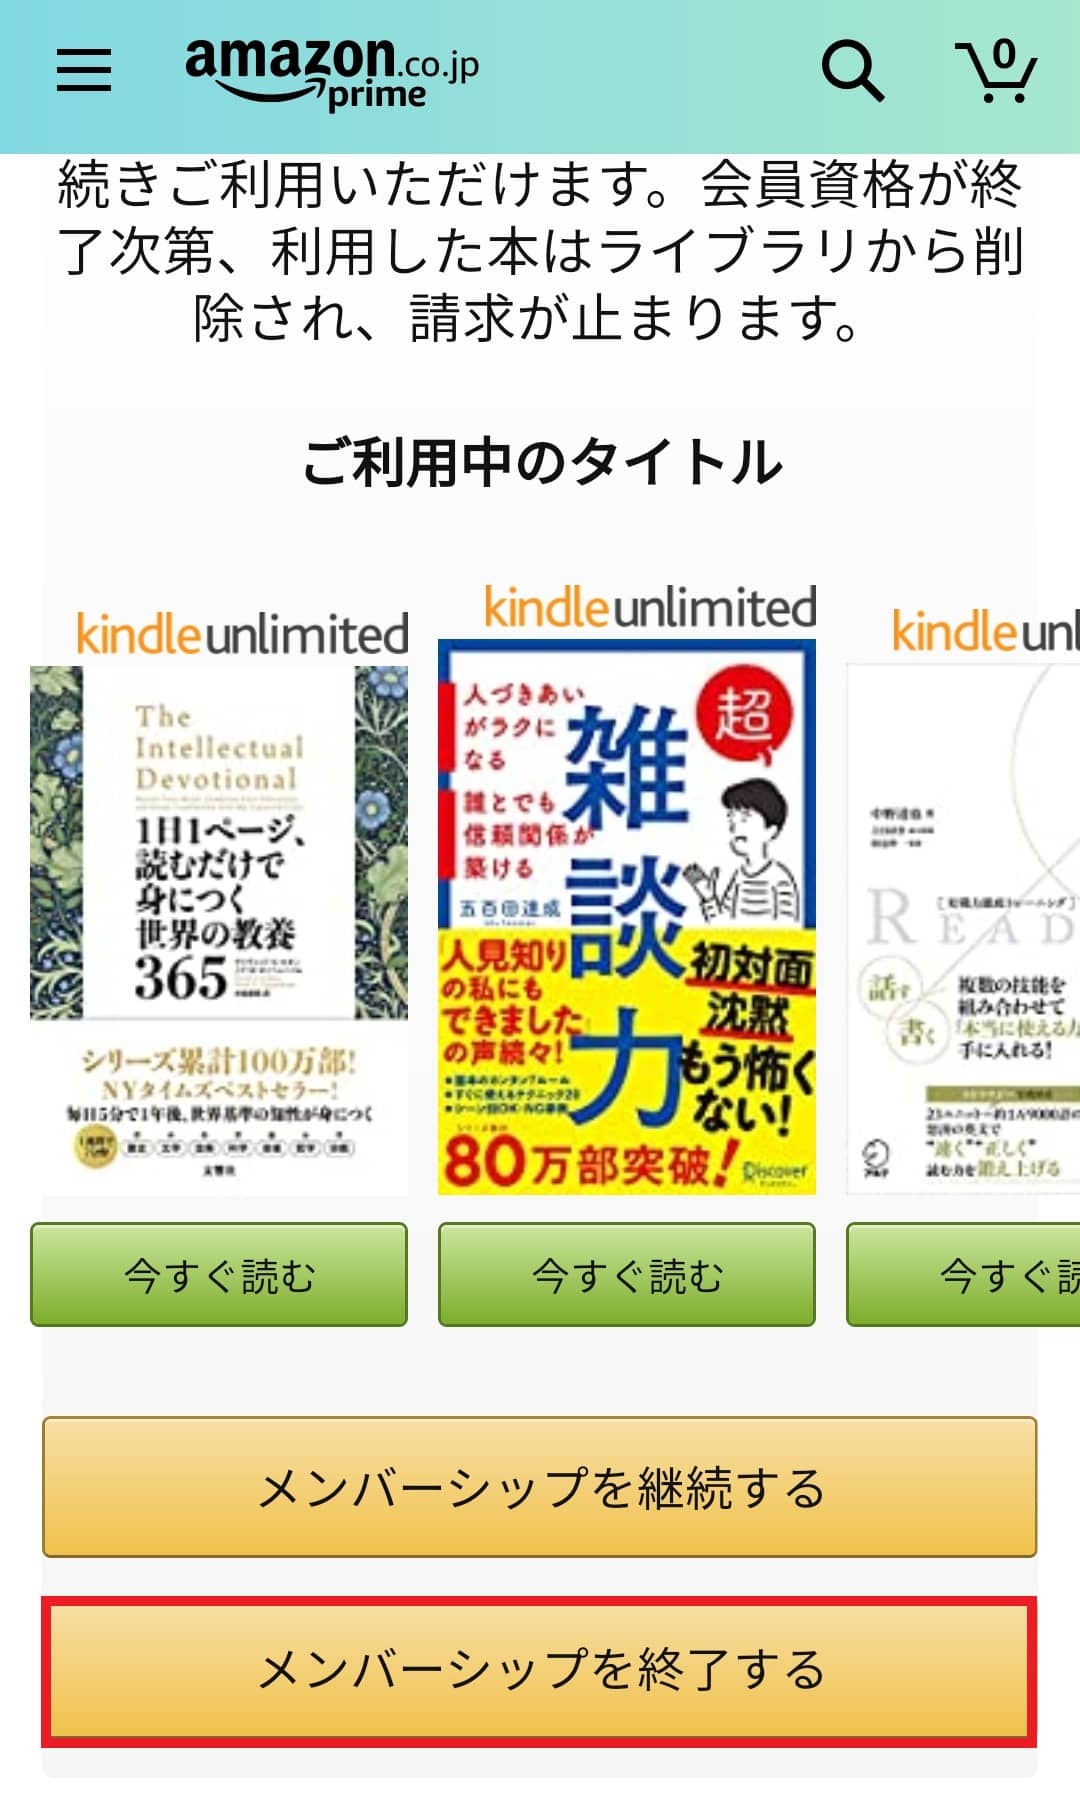 Kindle Unlimitedを解約するボタンの画像。